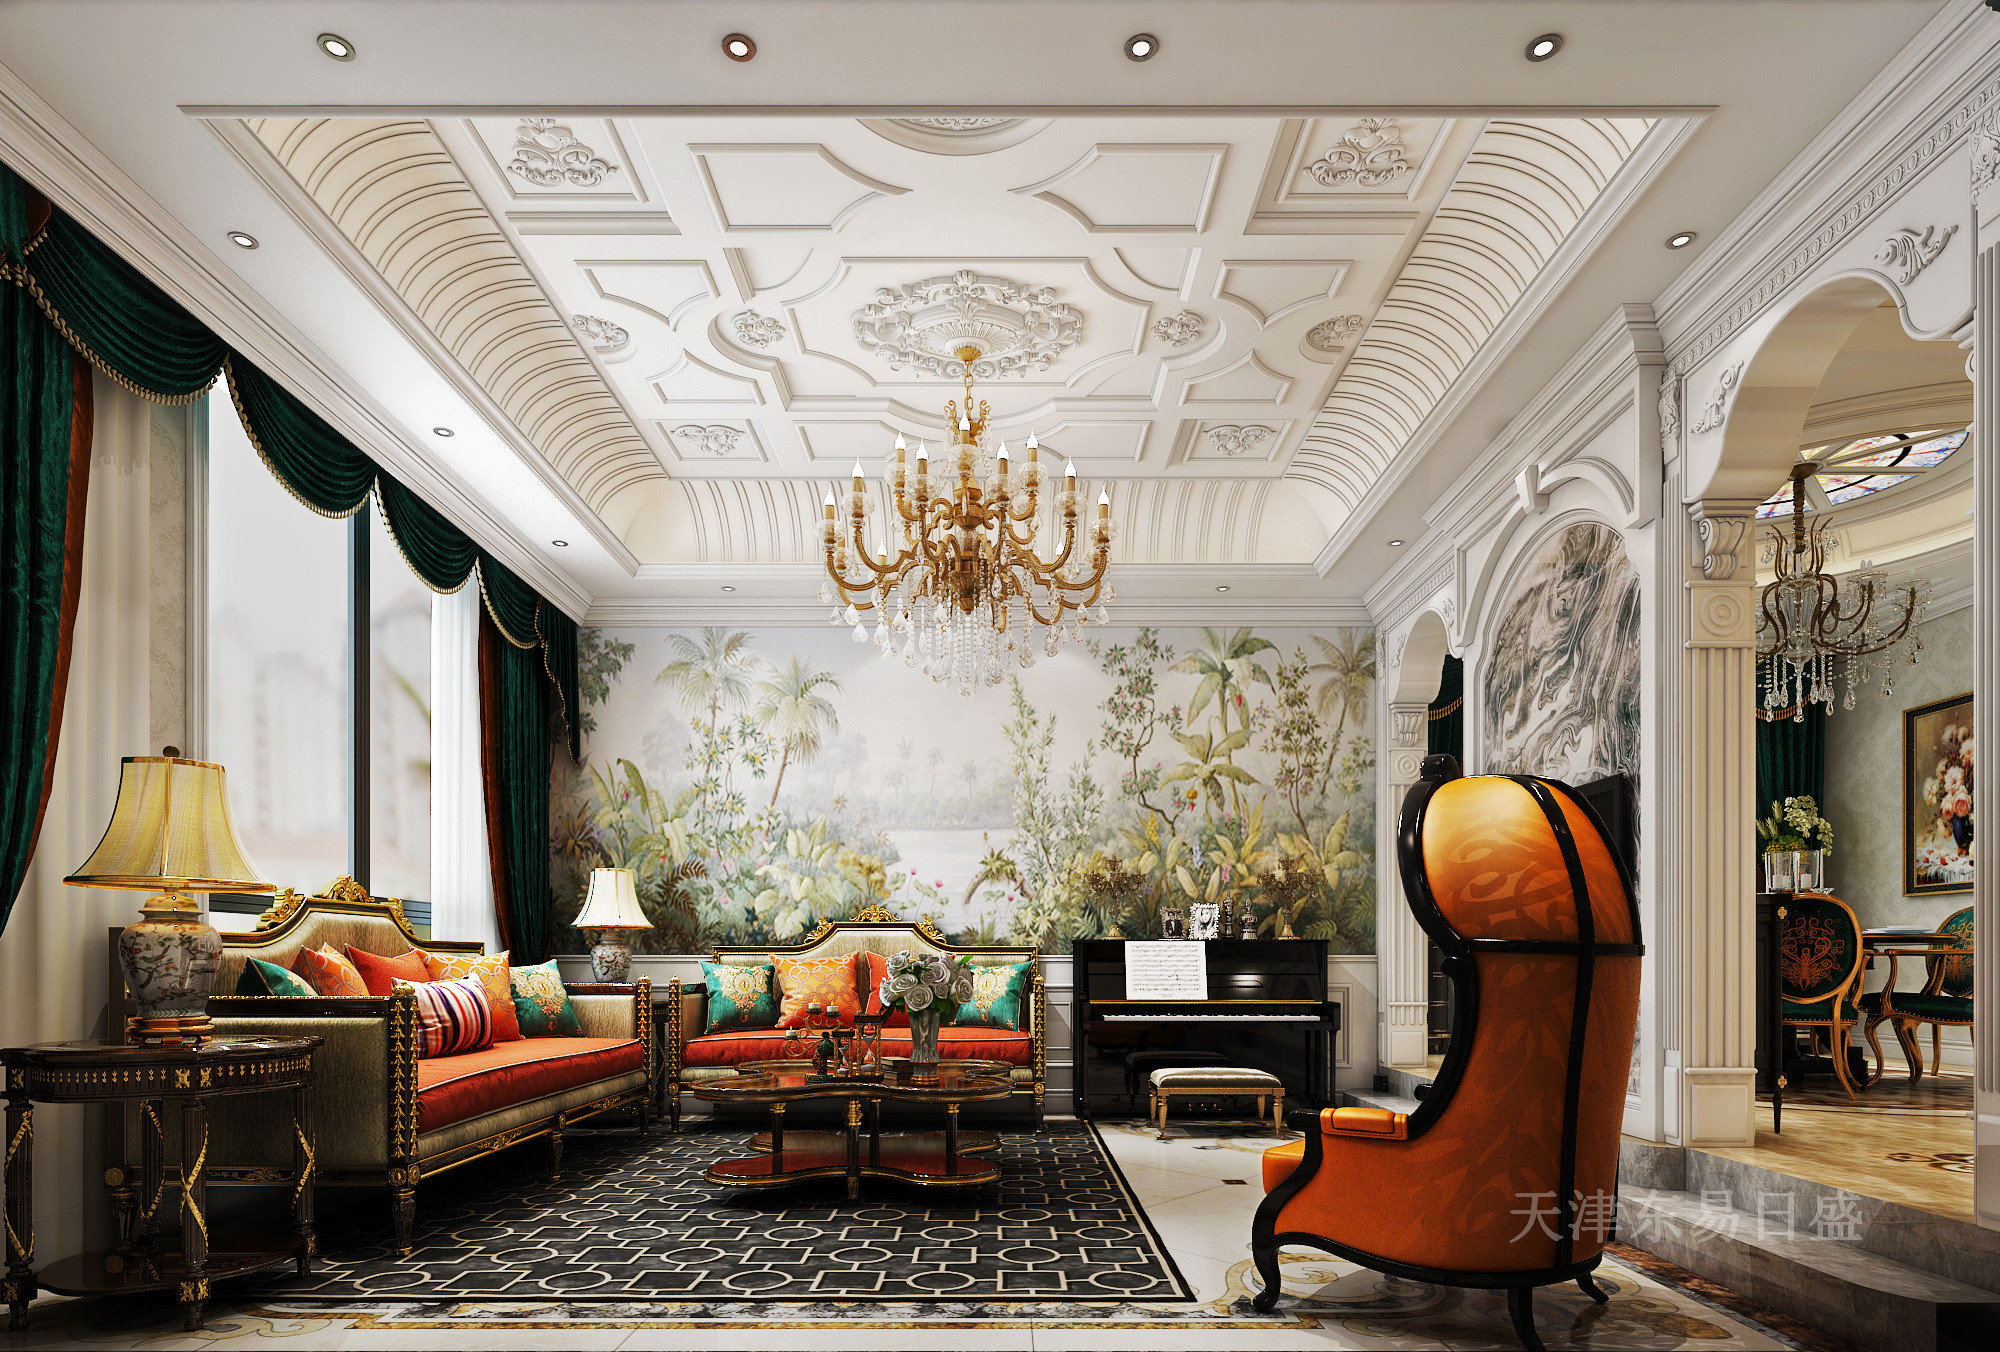 330平水木清华新古典主义风格别墅设计,高雅而和谐